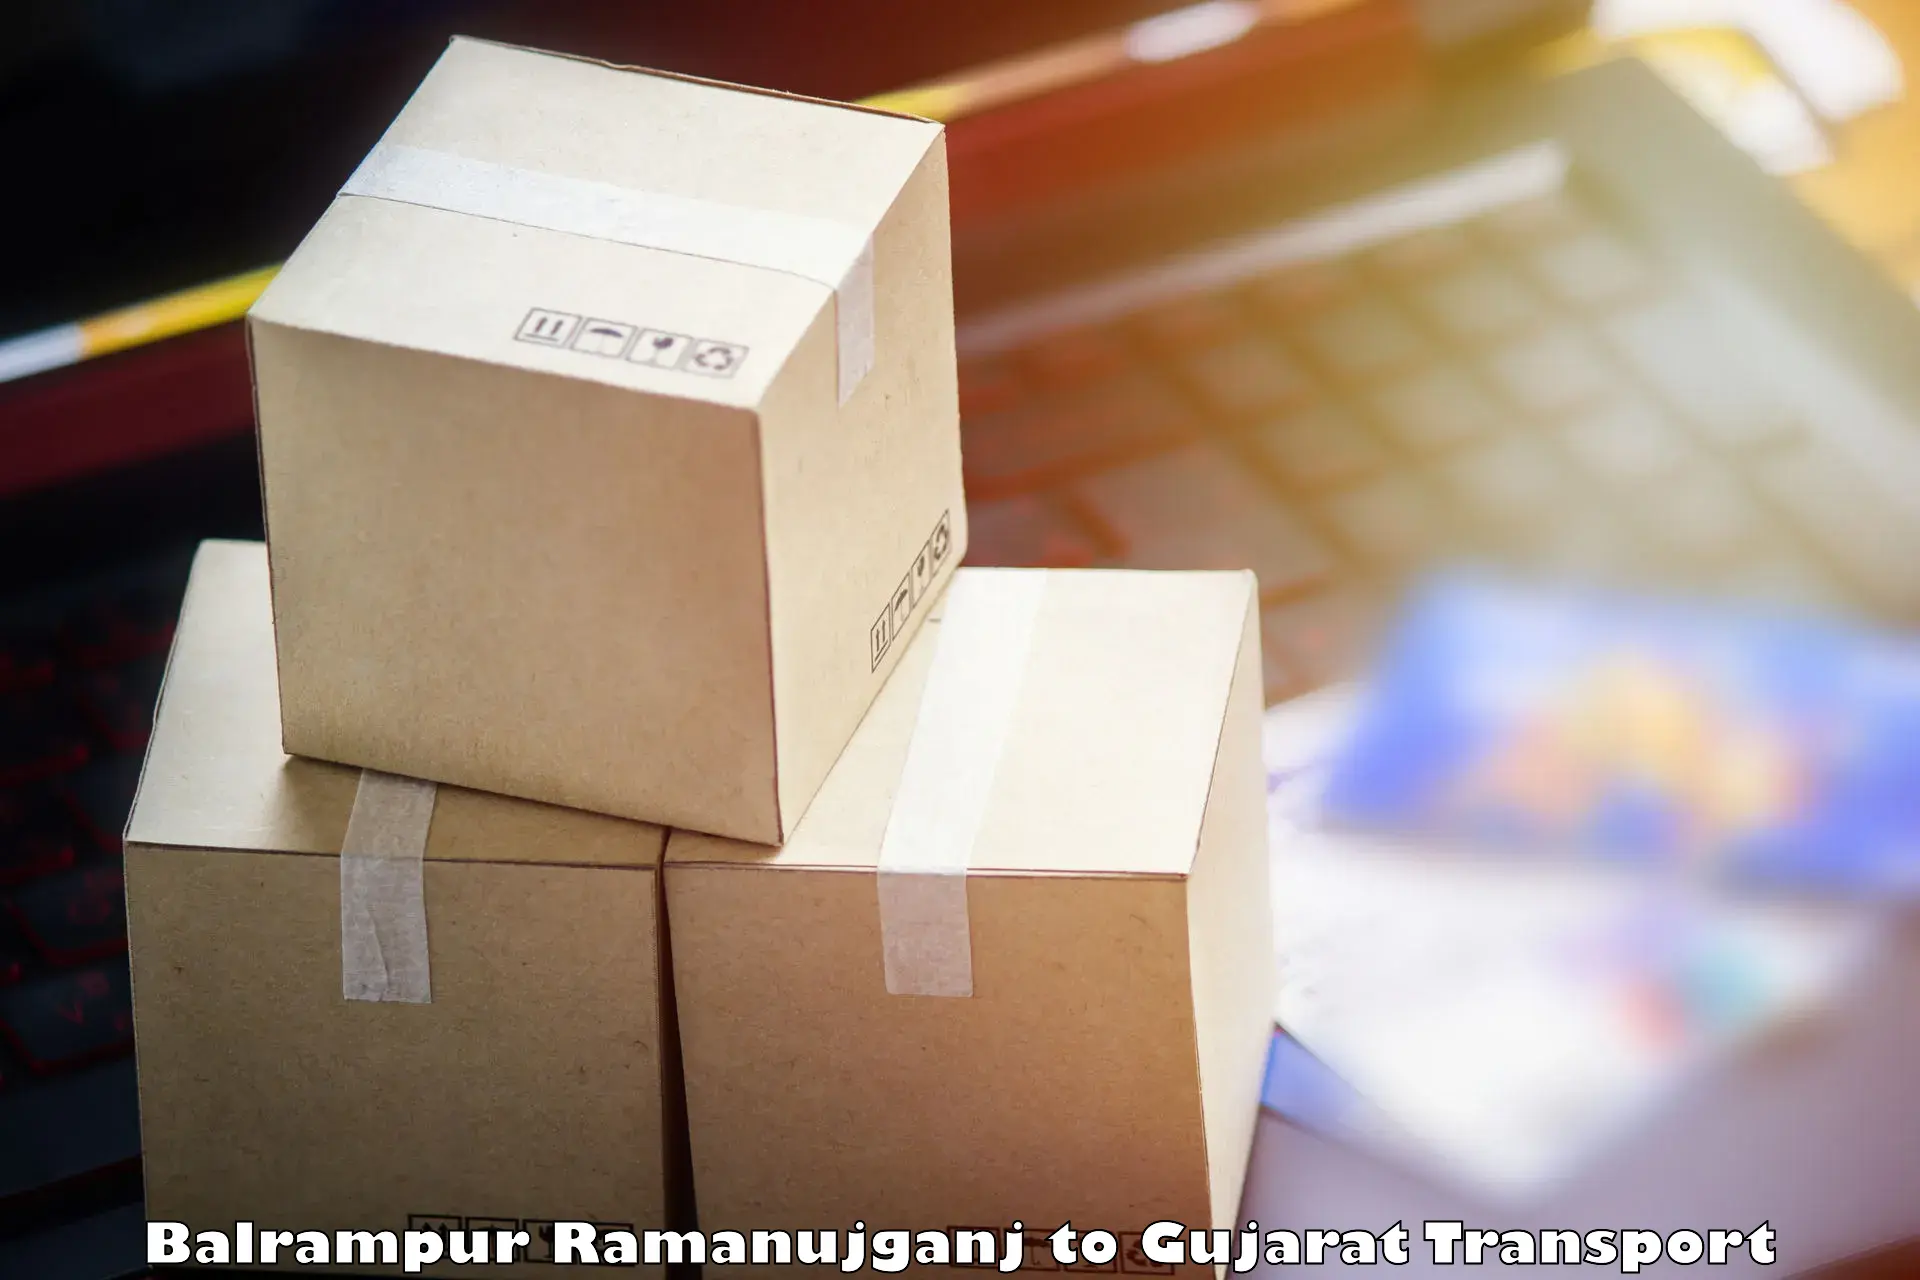 Two wheeler parcel service Balrampur Ramanujganj to Patan